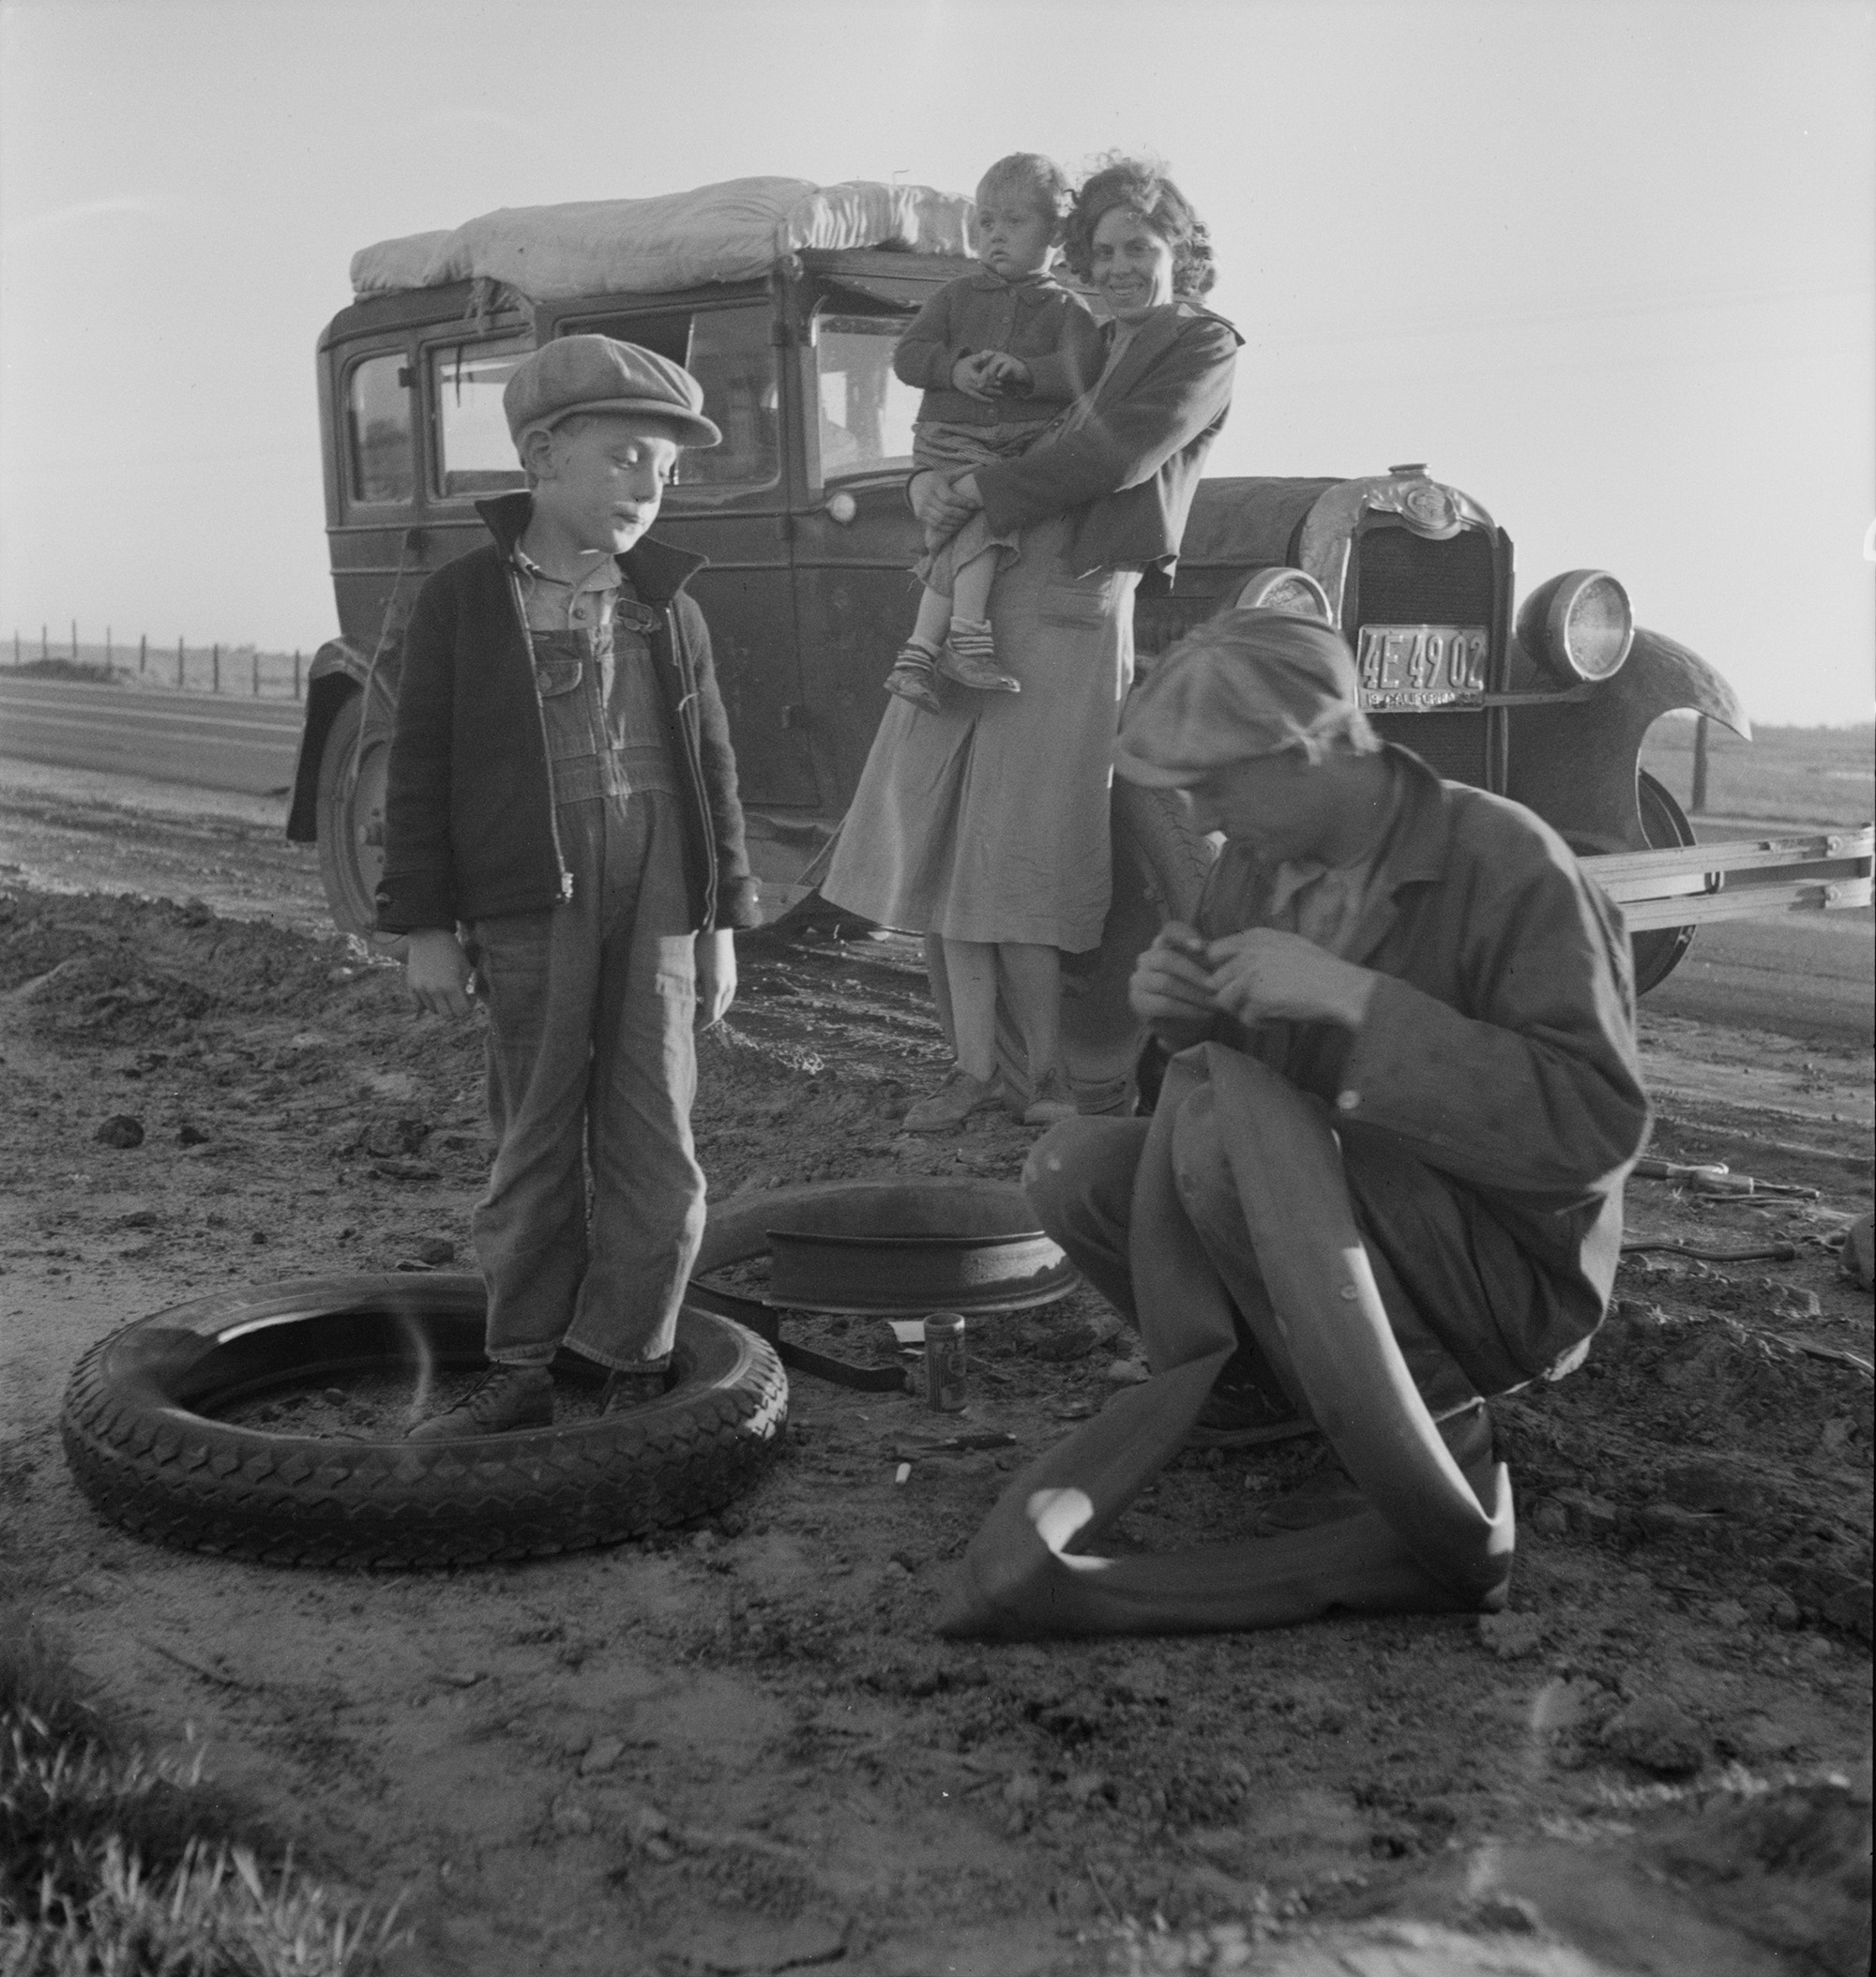 Vándorló mezógazdasági munkás és családja a 99-es út mentén 1937-ben (fotó: Dorothea Lange)